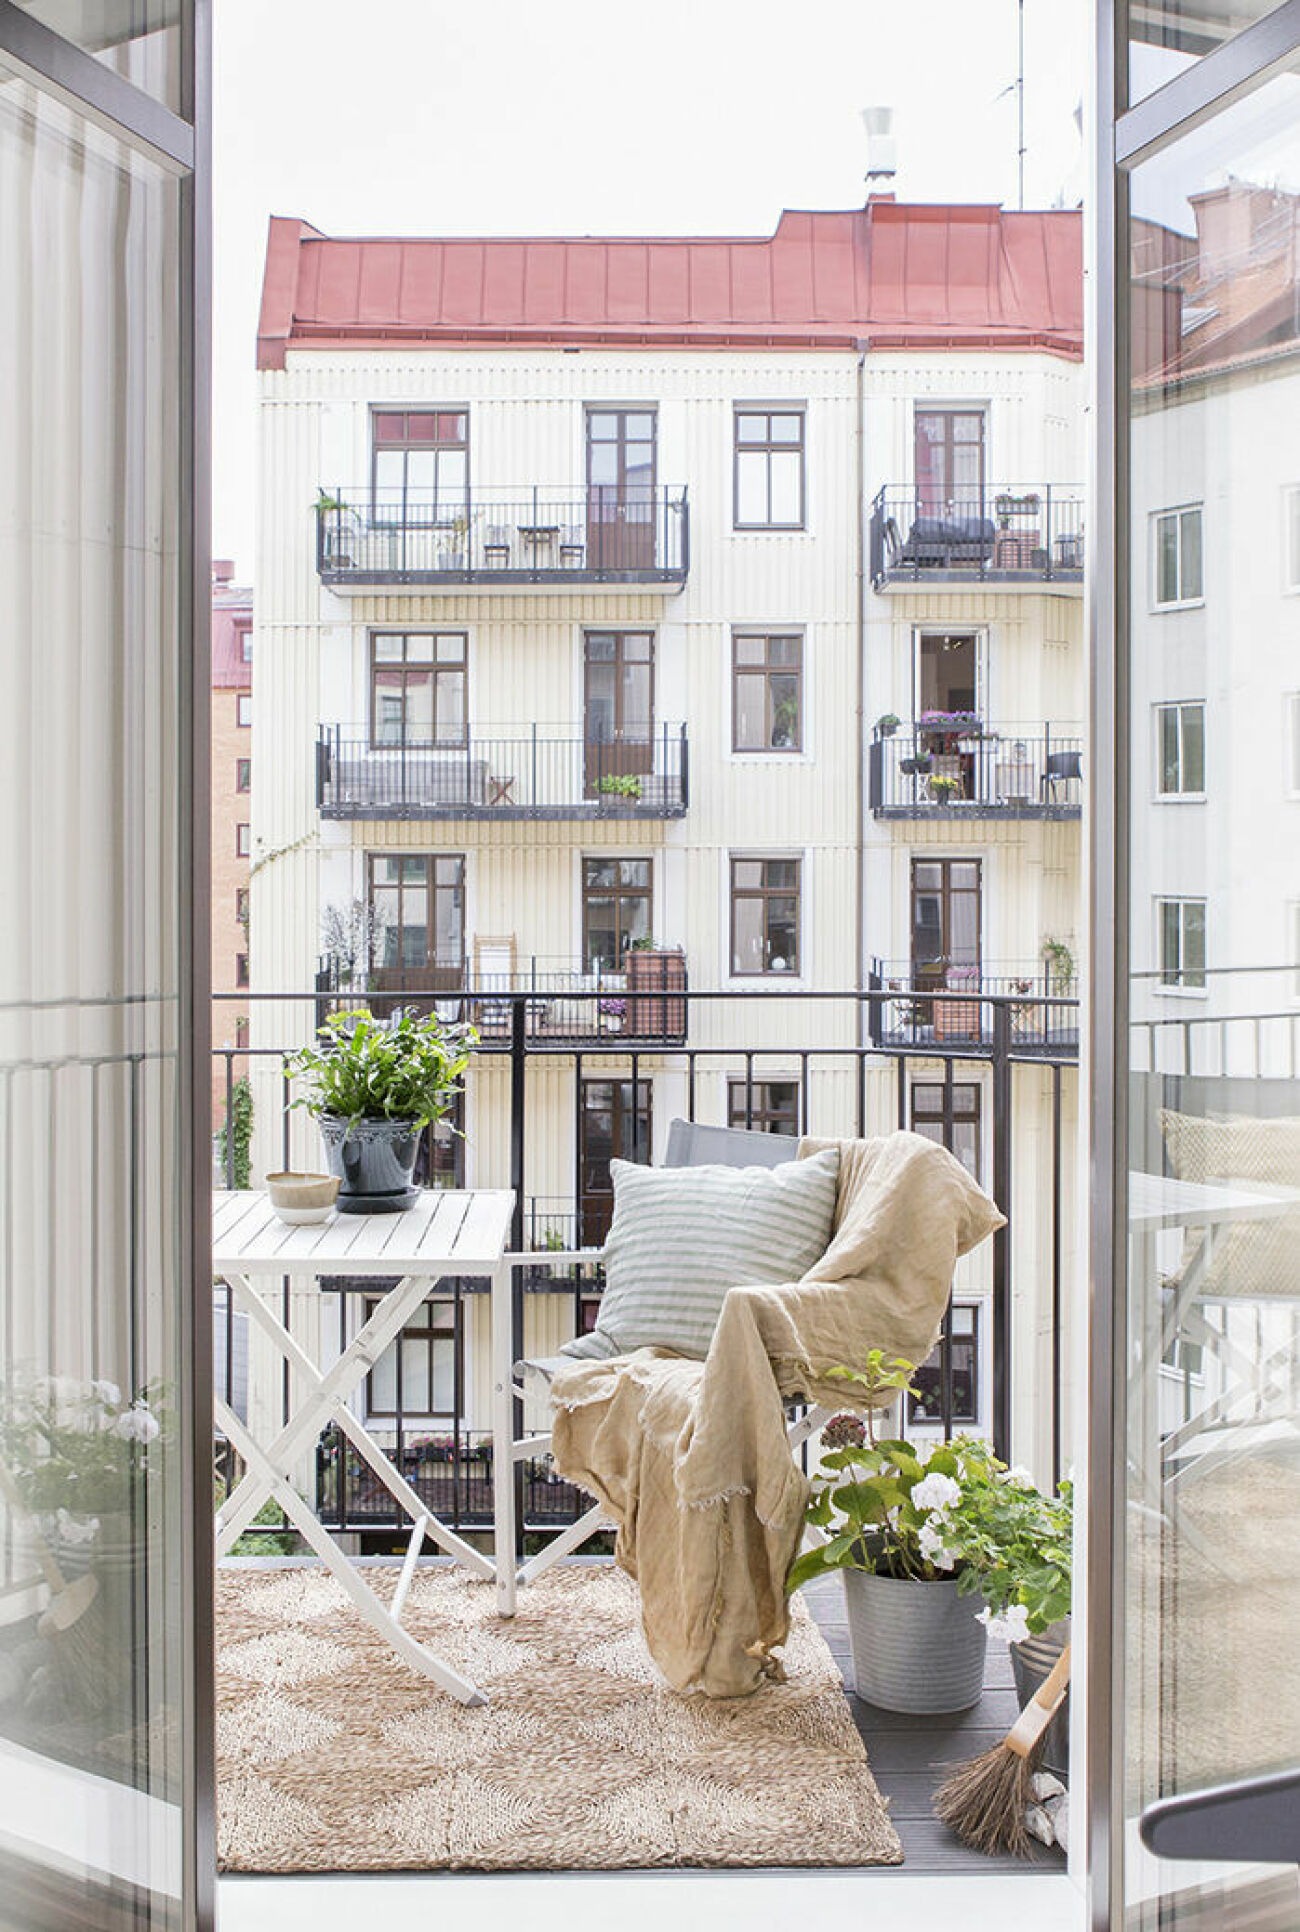 Skandinaviskt inredd balkong med naturnära färger och matta på balkongen